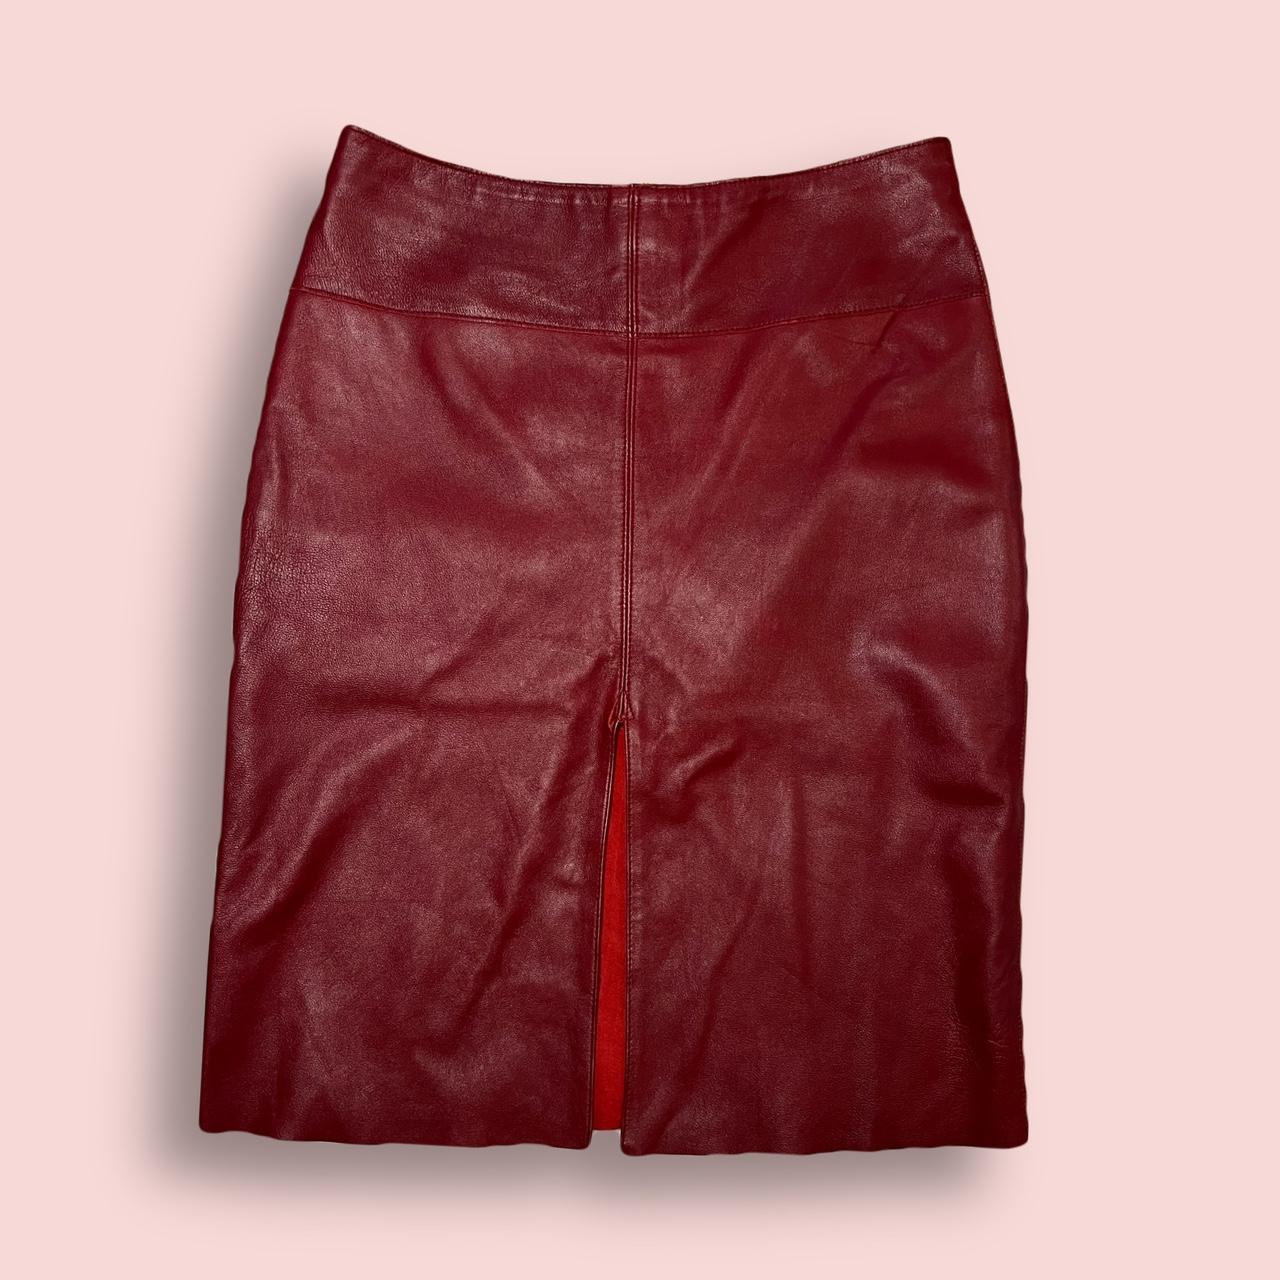 Bebe Women's Burgundy Skirt